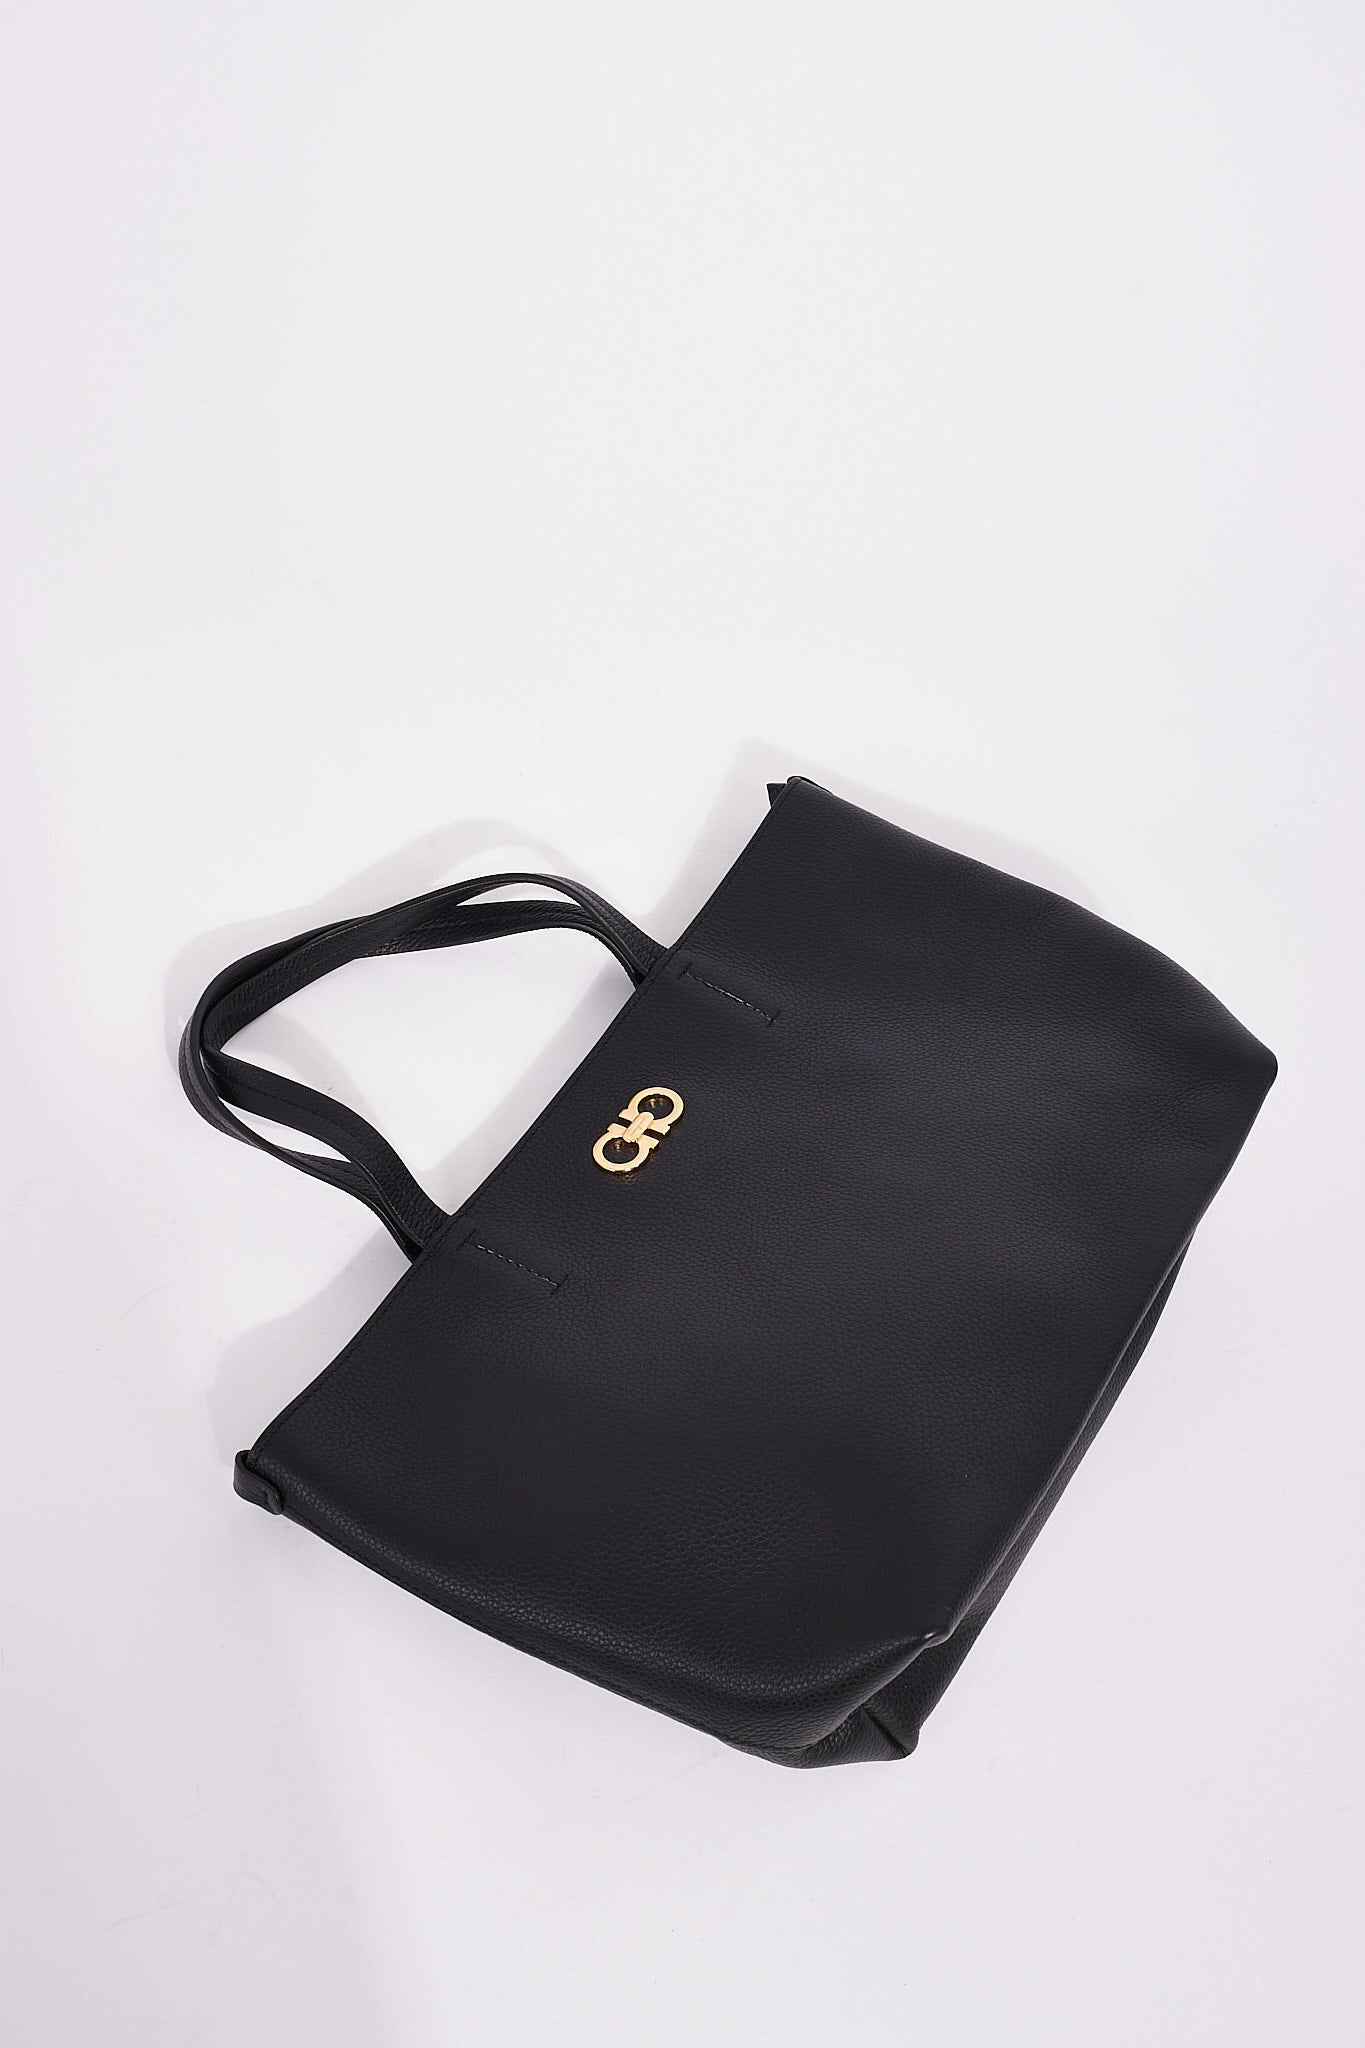 Salvatore Ferragamo Black Leather Small Tote Bag